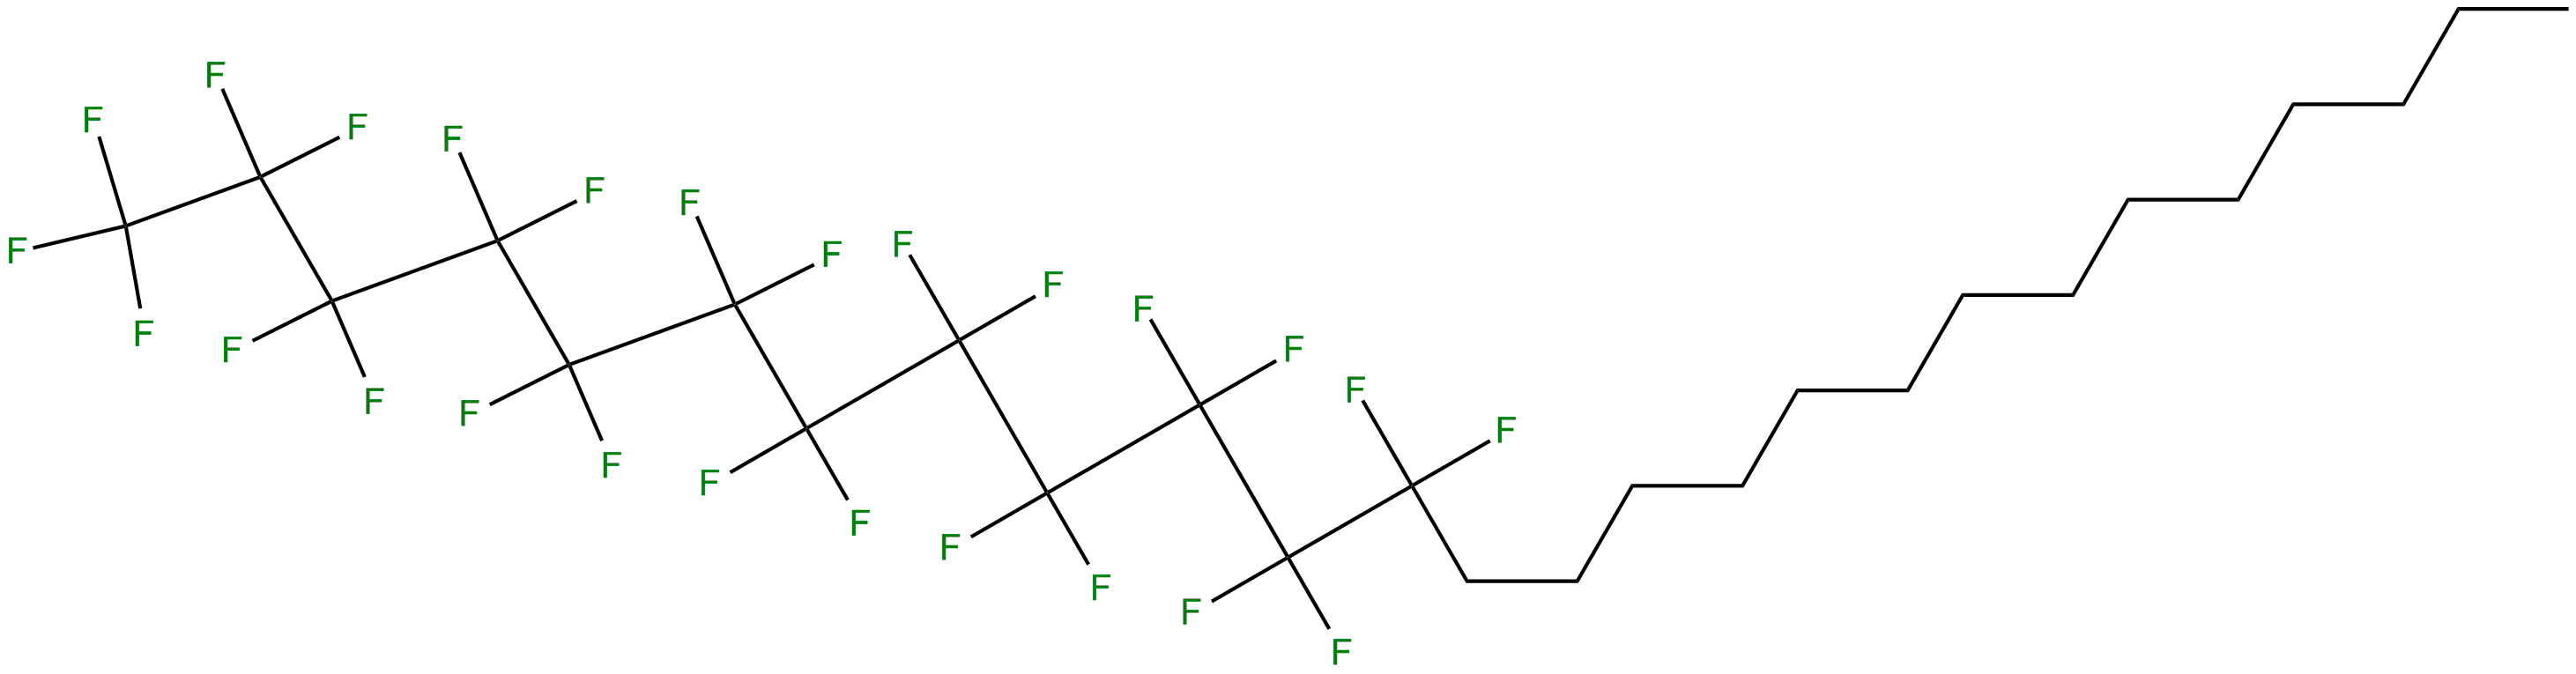 Image of 1,1,1,2,2,3,3,4,4,5,5,6,6,7,7,8,8,9,9,10,10,11,11,12,12-pentacosafluorohexacosane